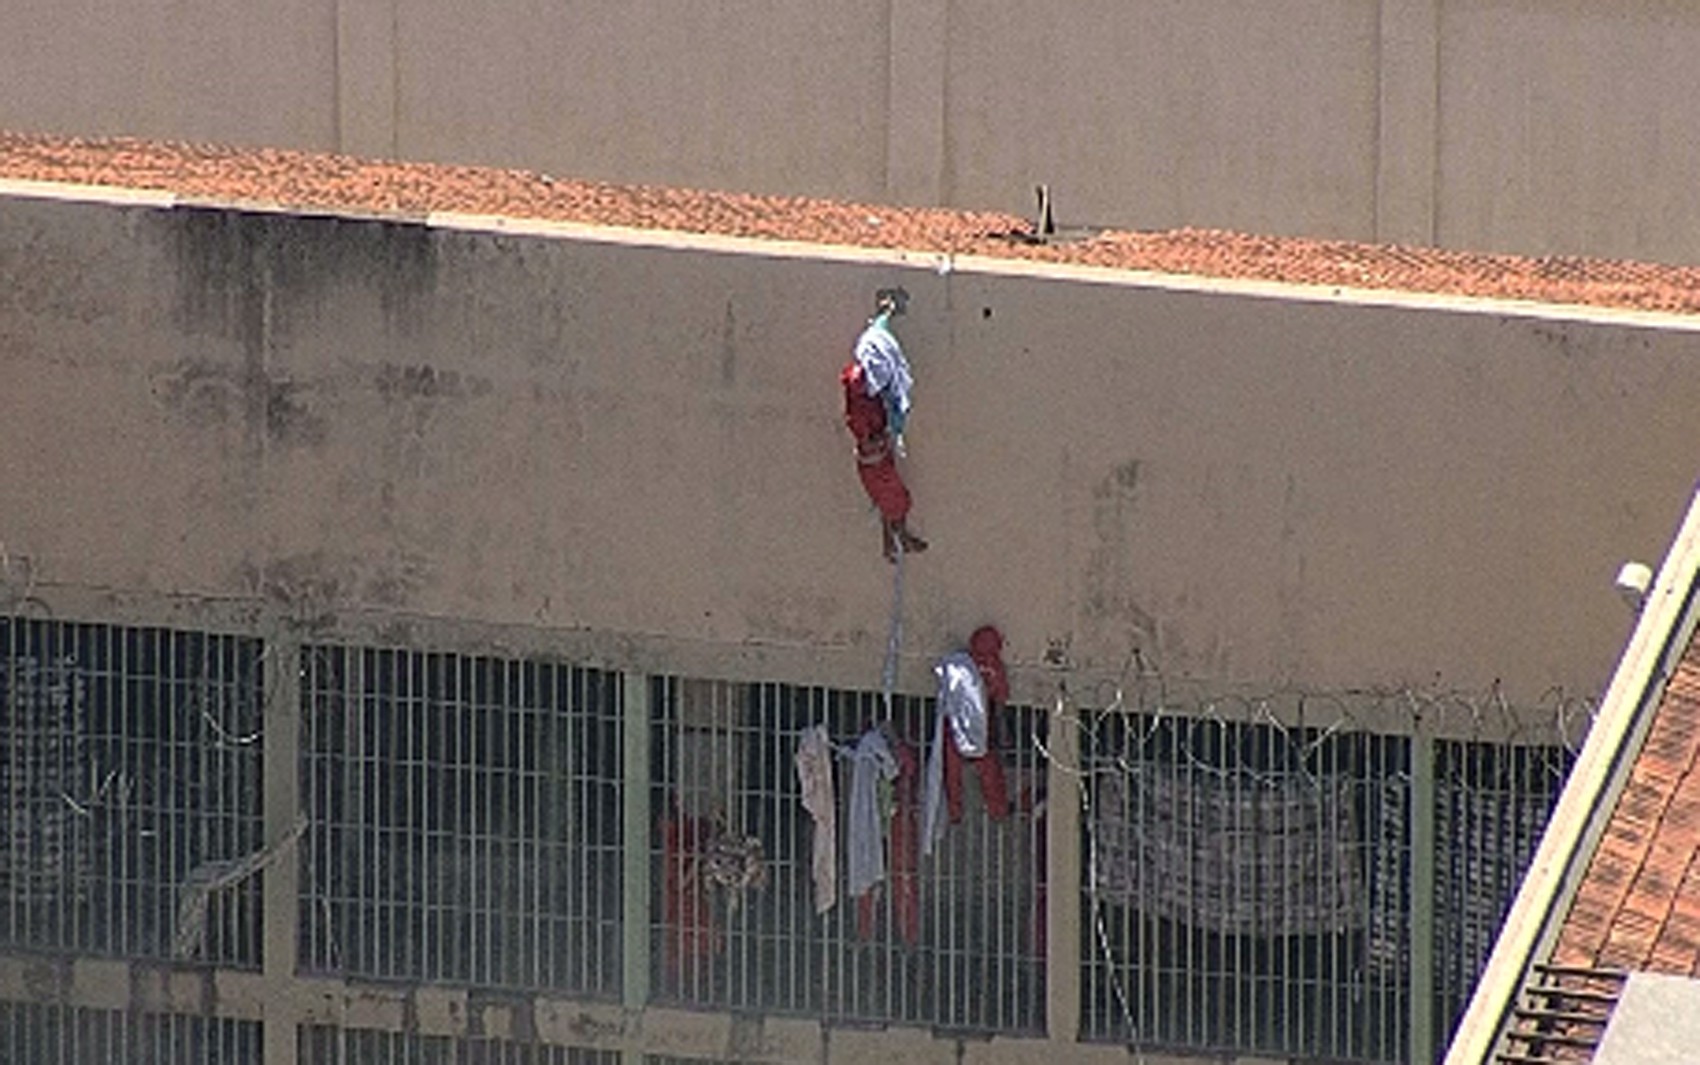 Preso tenta escapar pelo telhado (Foto: Reprodução/Globocop/TV Globo Minas)